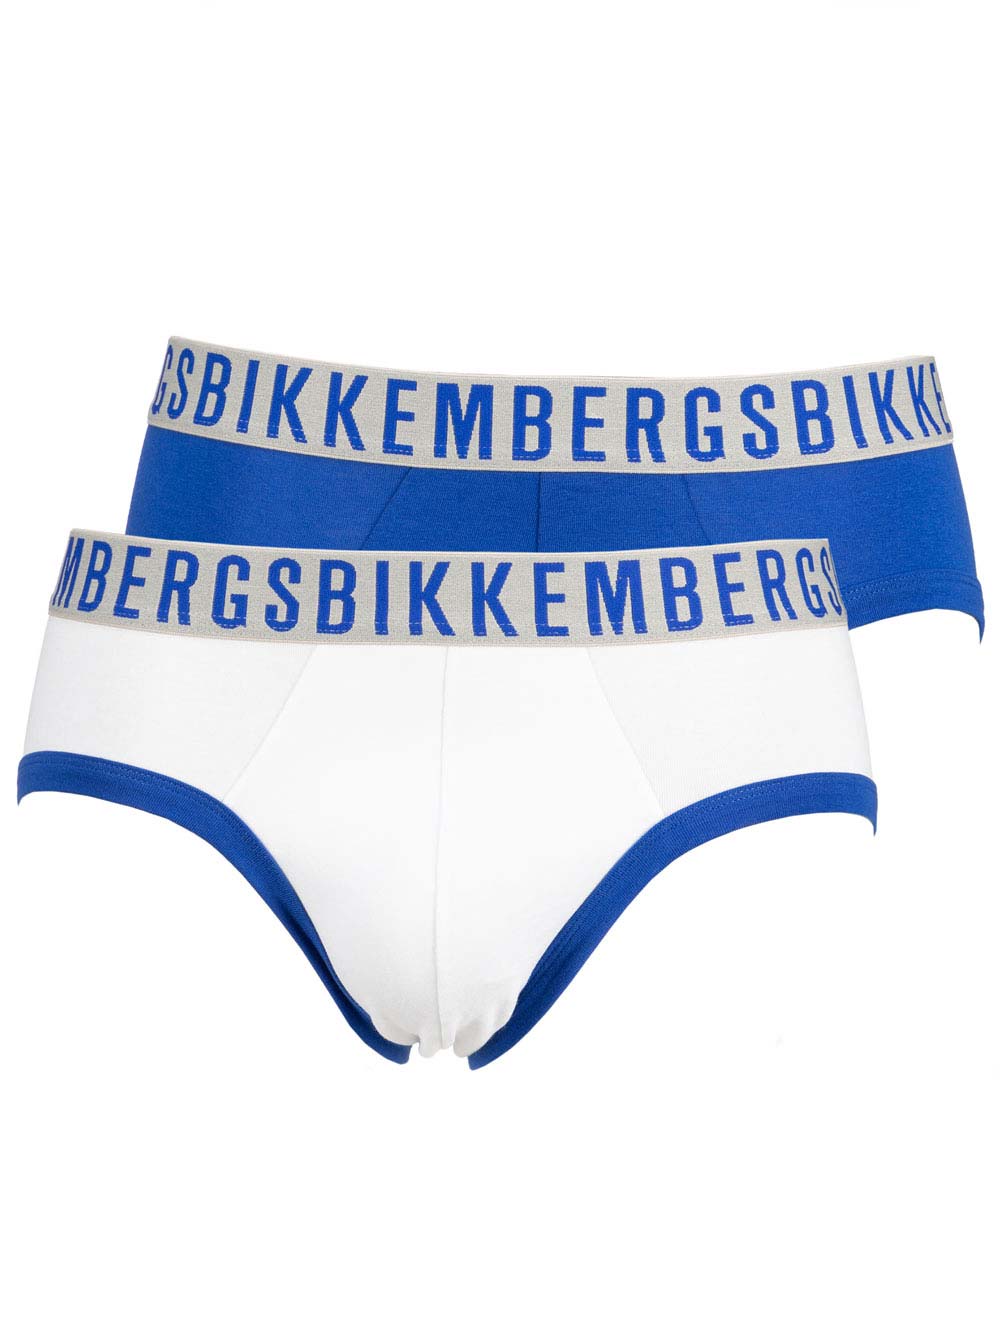 Slip Bipack Uomo Bikkembergs in Cotone Blu e Bianco - B4S30012022 | eBay